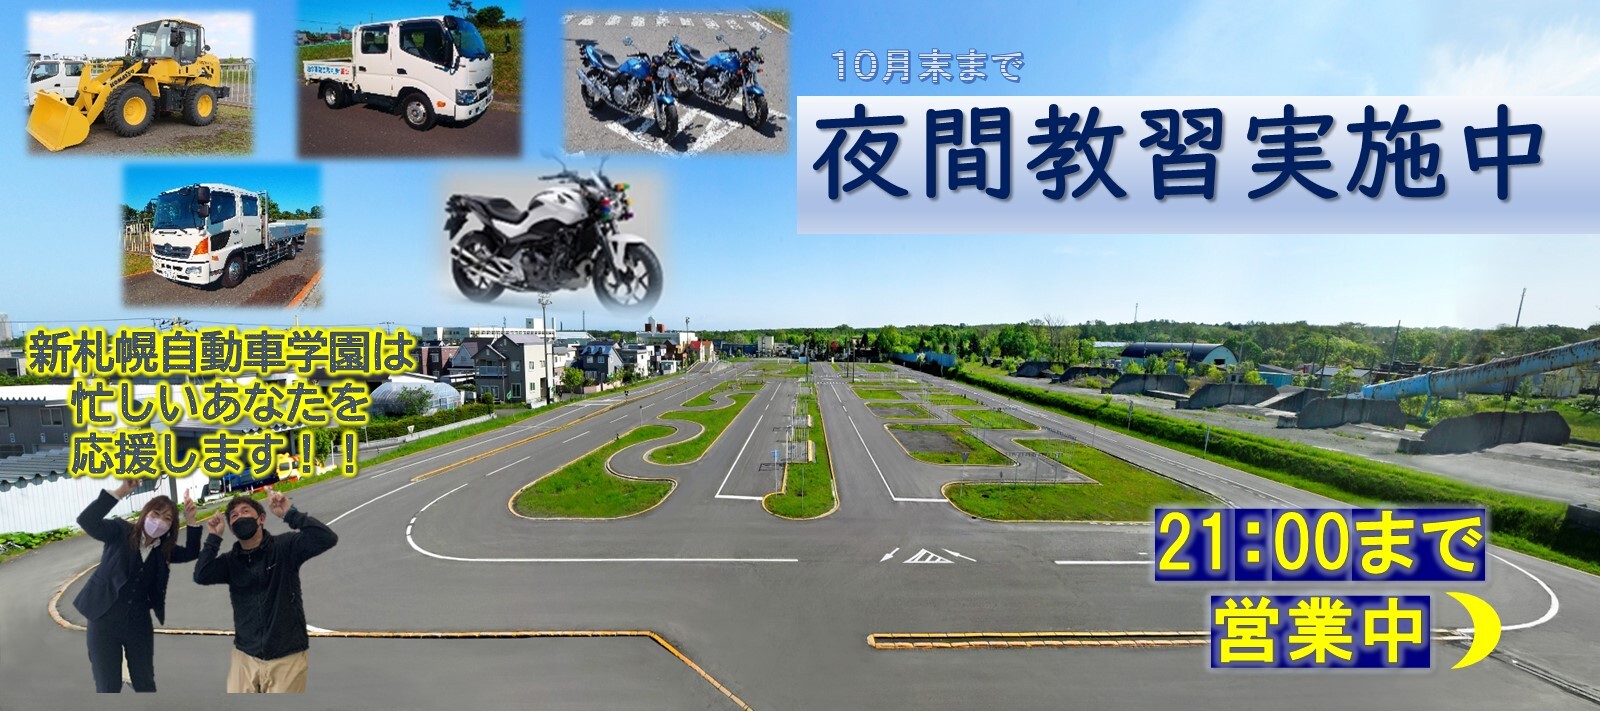 北海道公安委員会指定 新札幌自動車学園